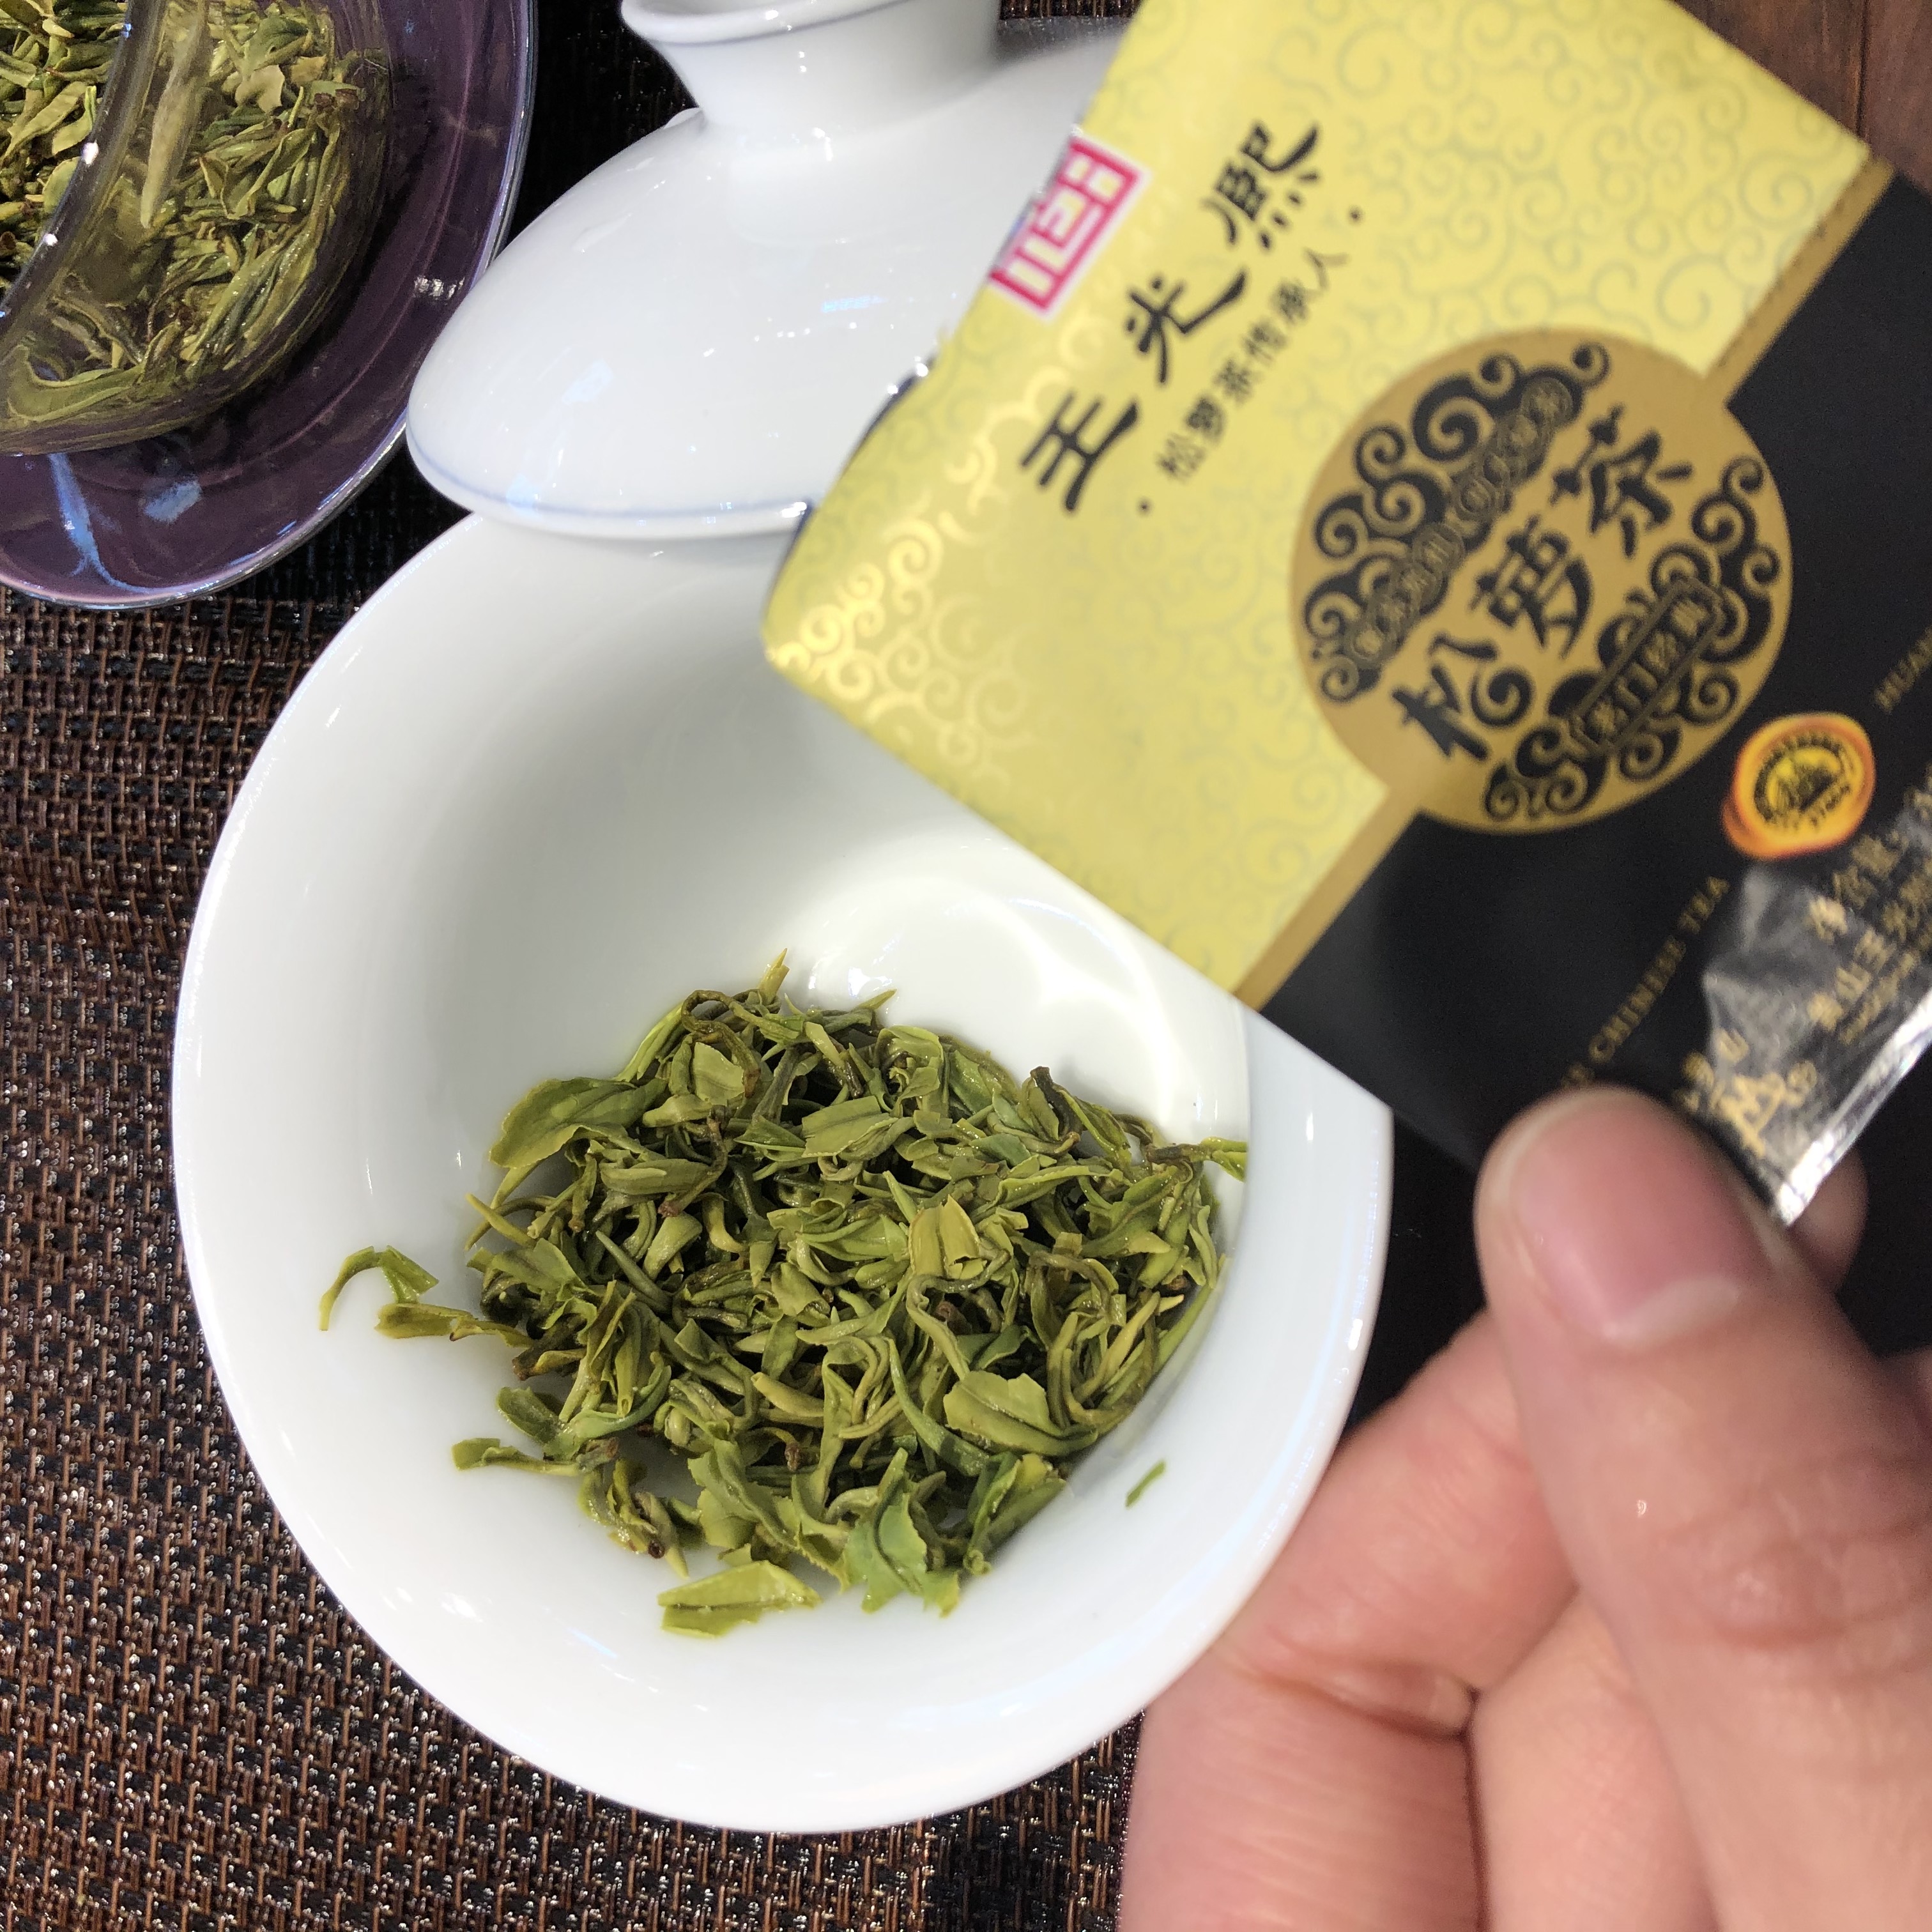 松萝茶,炒青茶鼻祖 唯一入药的茶,被誉为绿色黄金